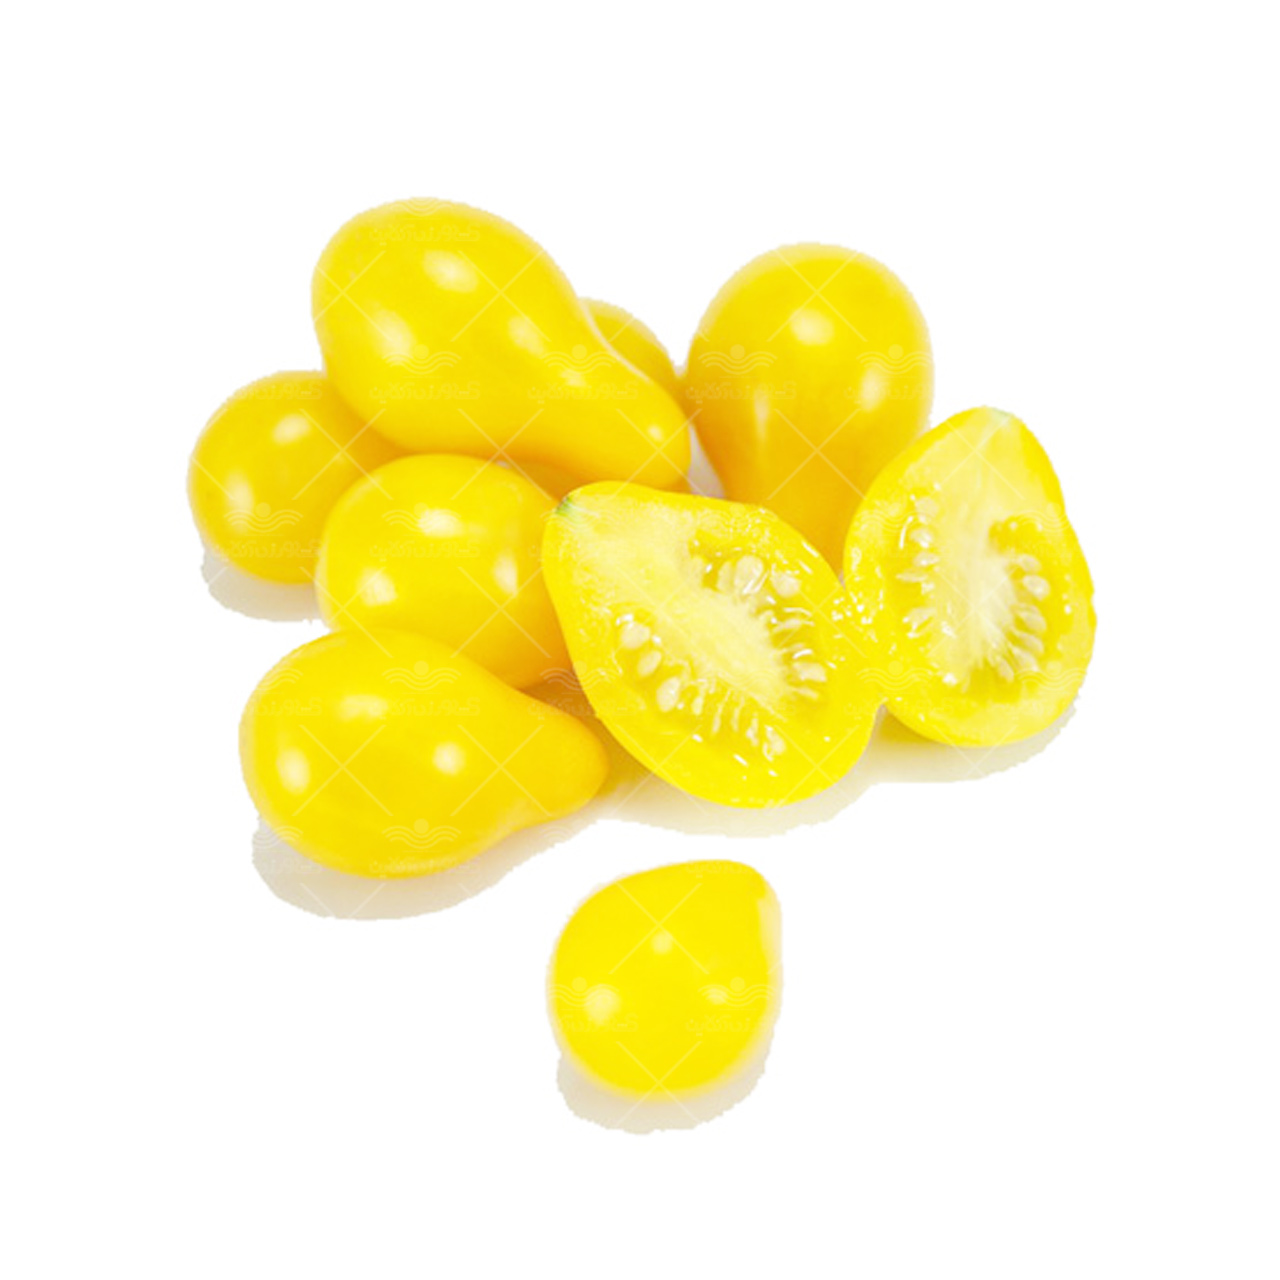 بذر گوجه فرنگی گلابی خوشه ای زرد مسترسید